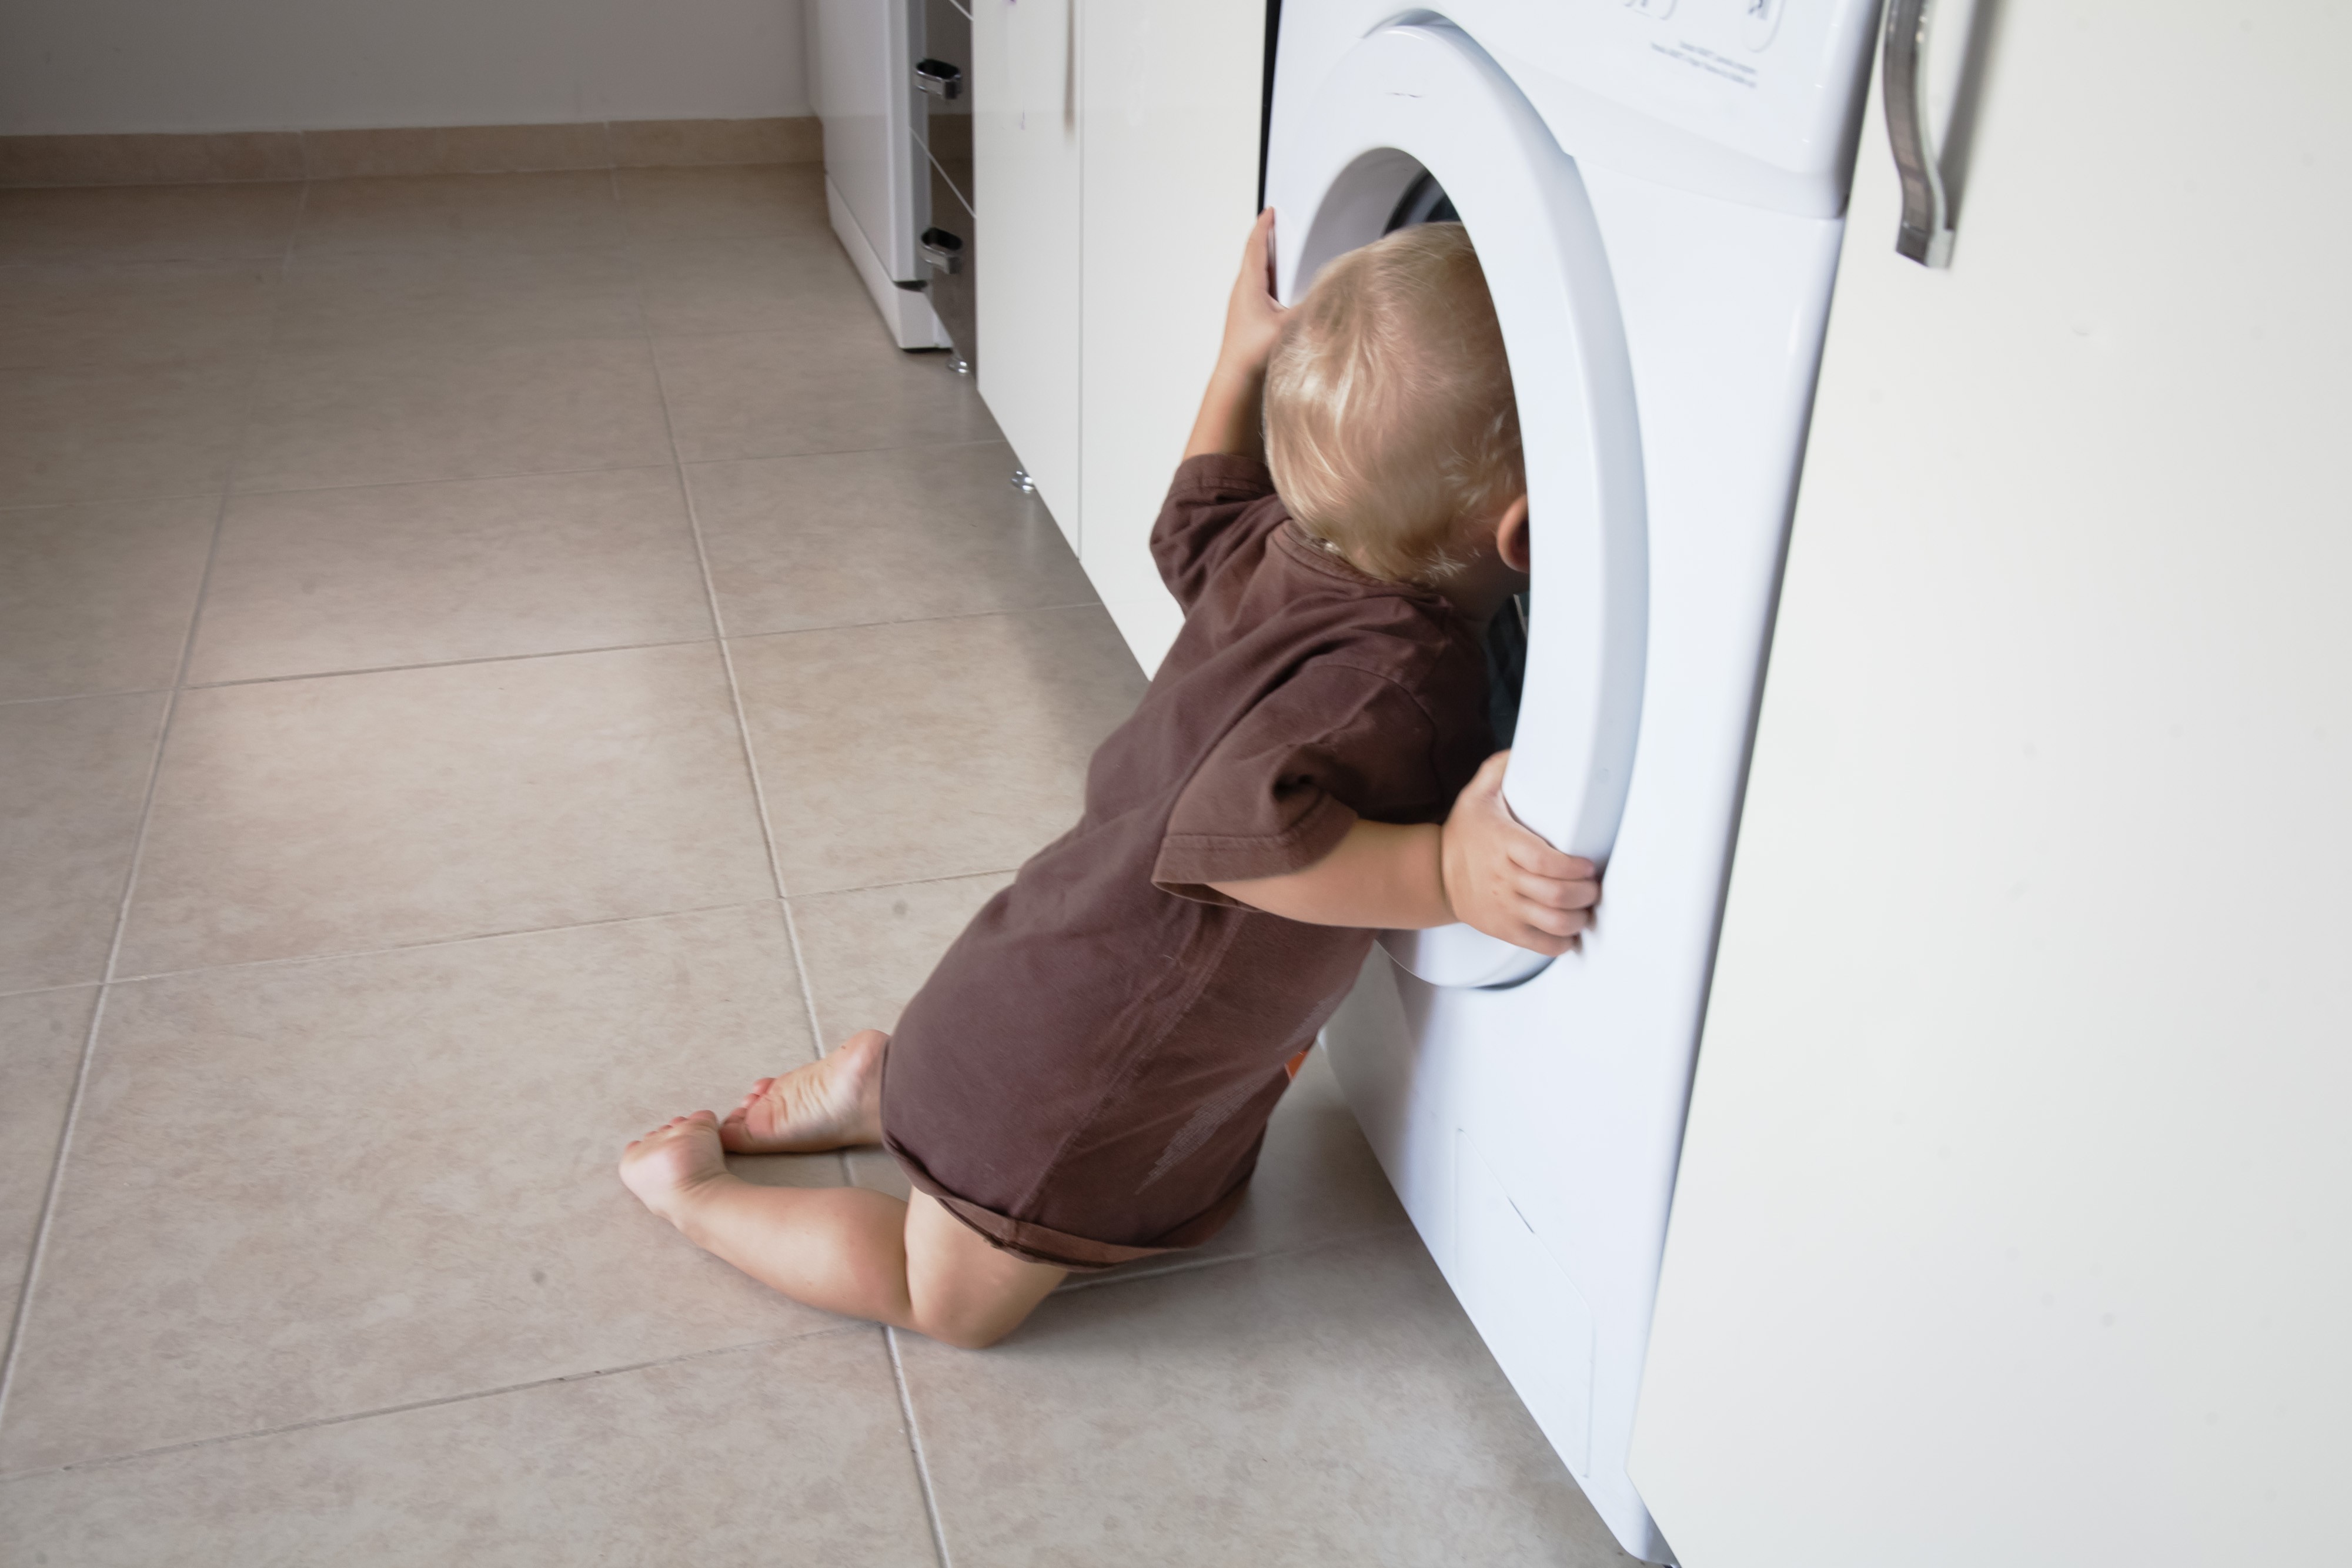 O menino foi encontrado na máquina de lavar (Foto: Thinkstock)